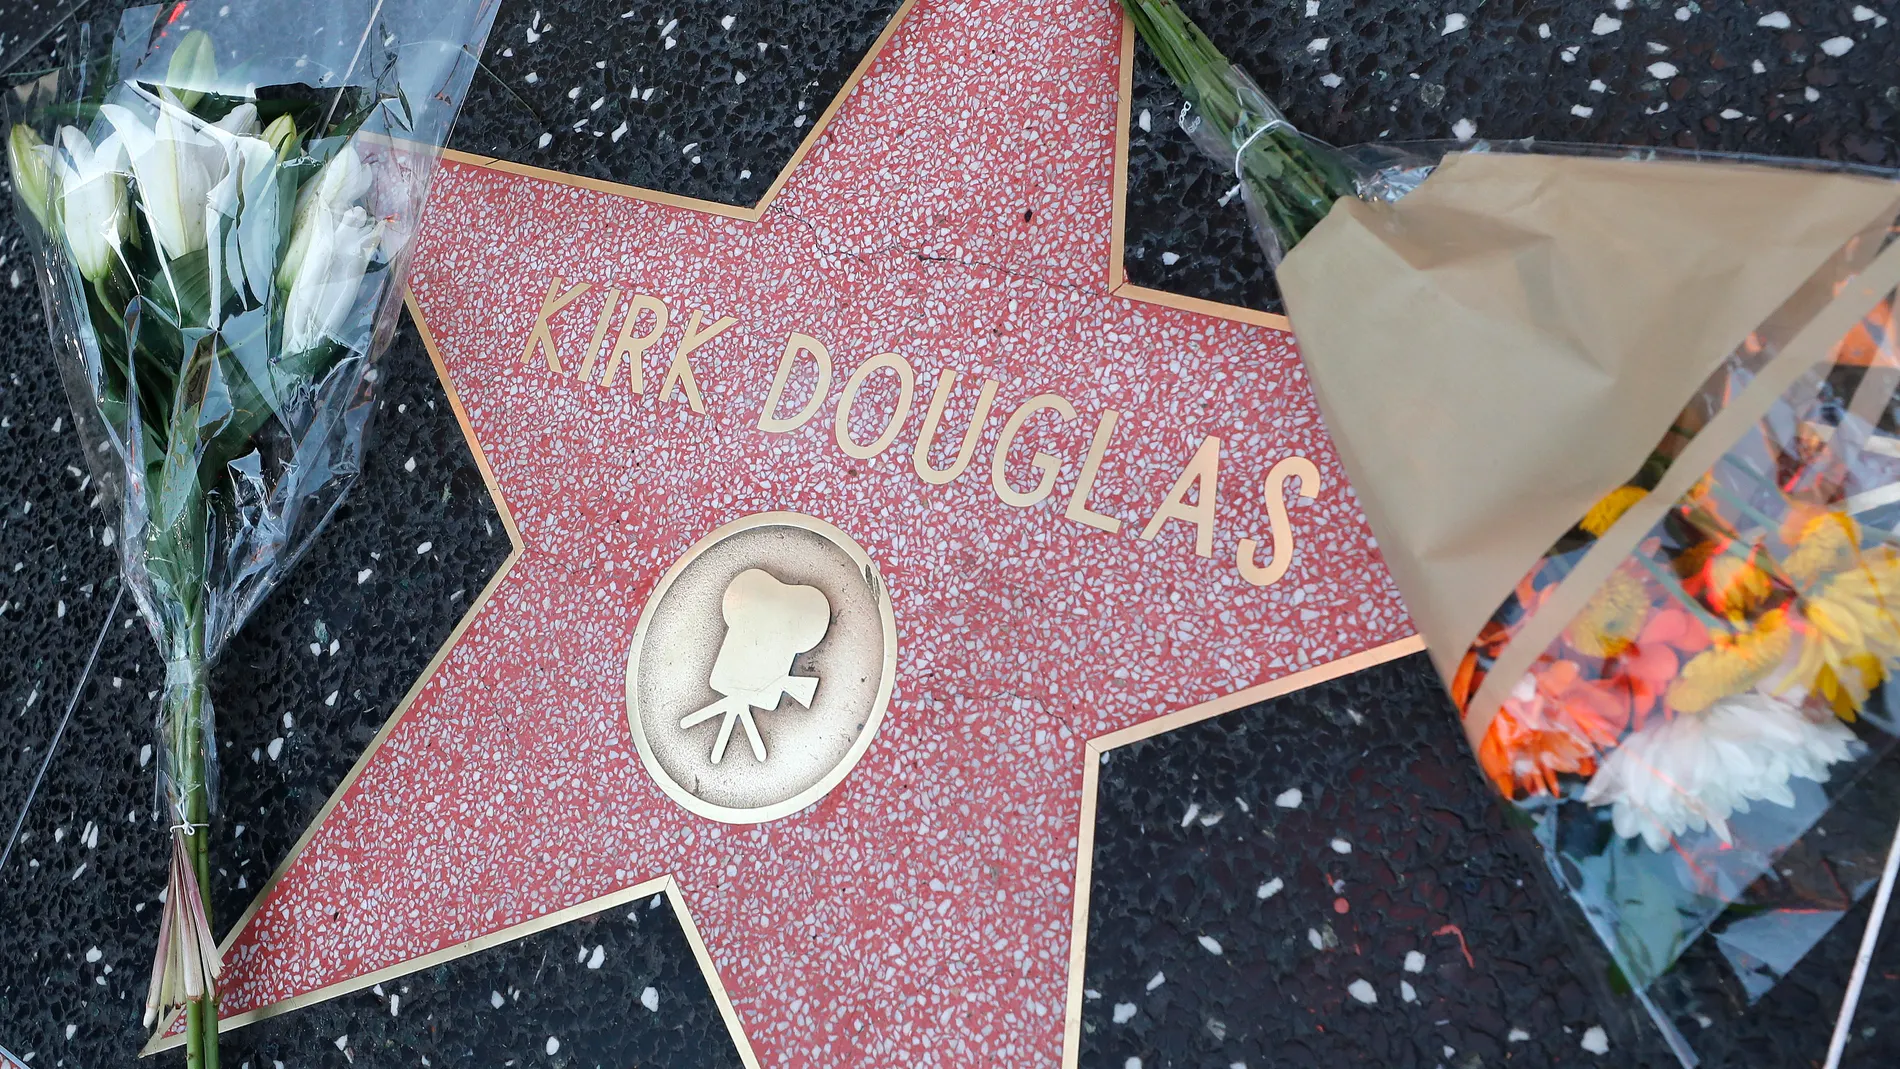 US actor Kirk Douglas dies at age 103